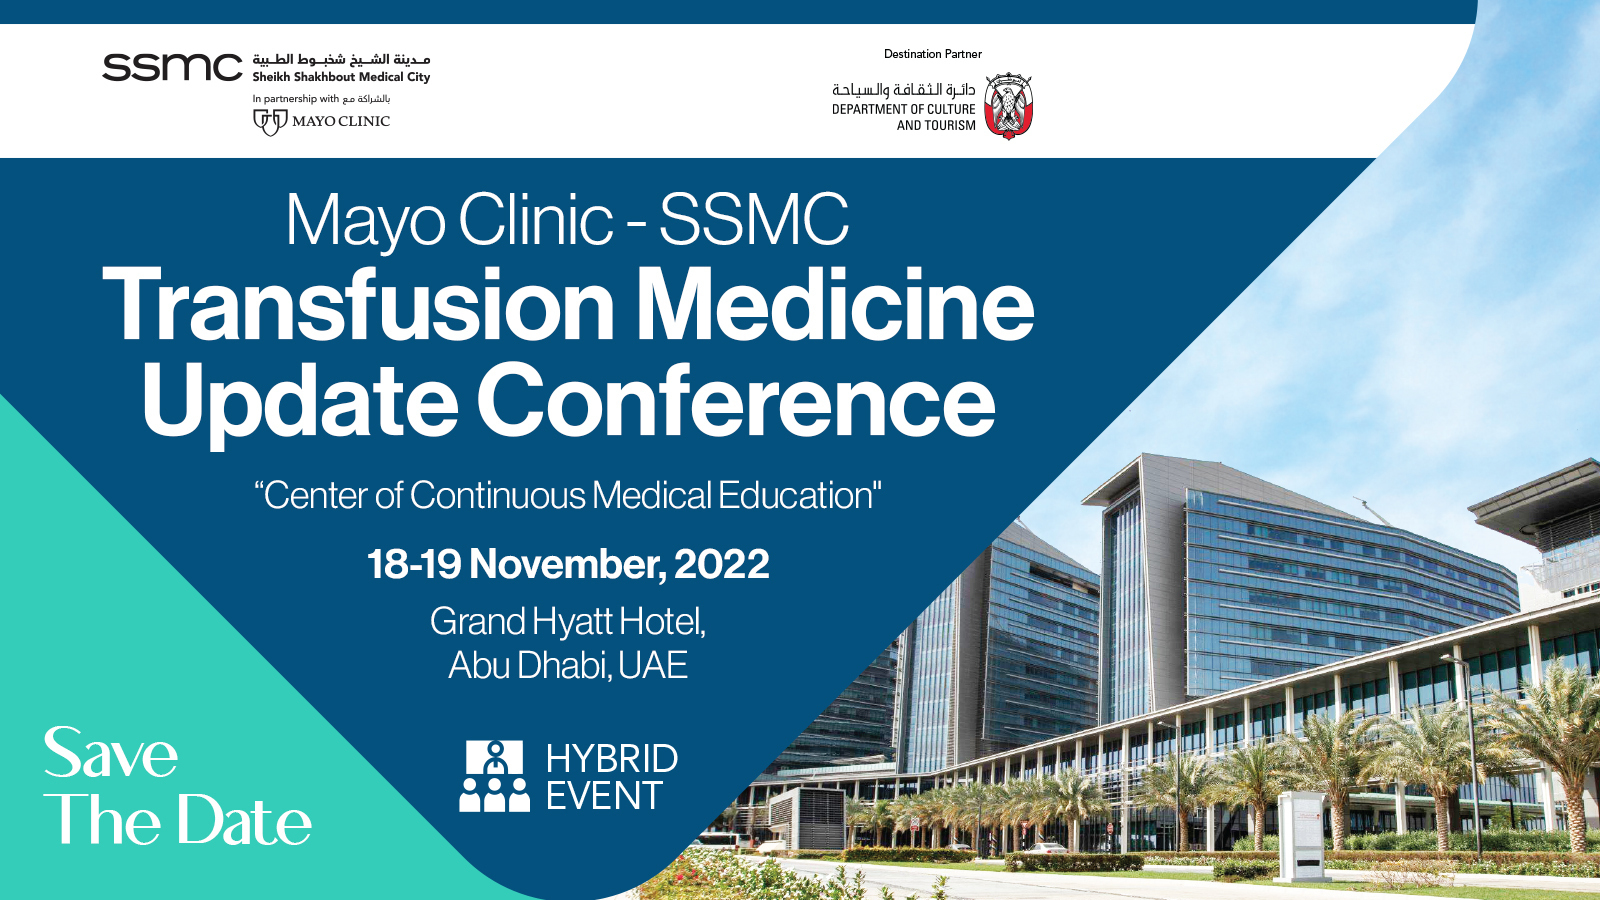 Mayo Clinic - SSMC Transfusion Medicine Update Conference, Abu Dhabi, United Arab Emirates